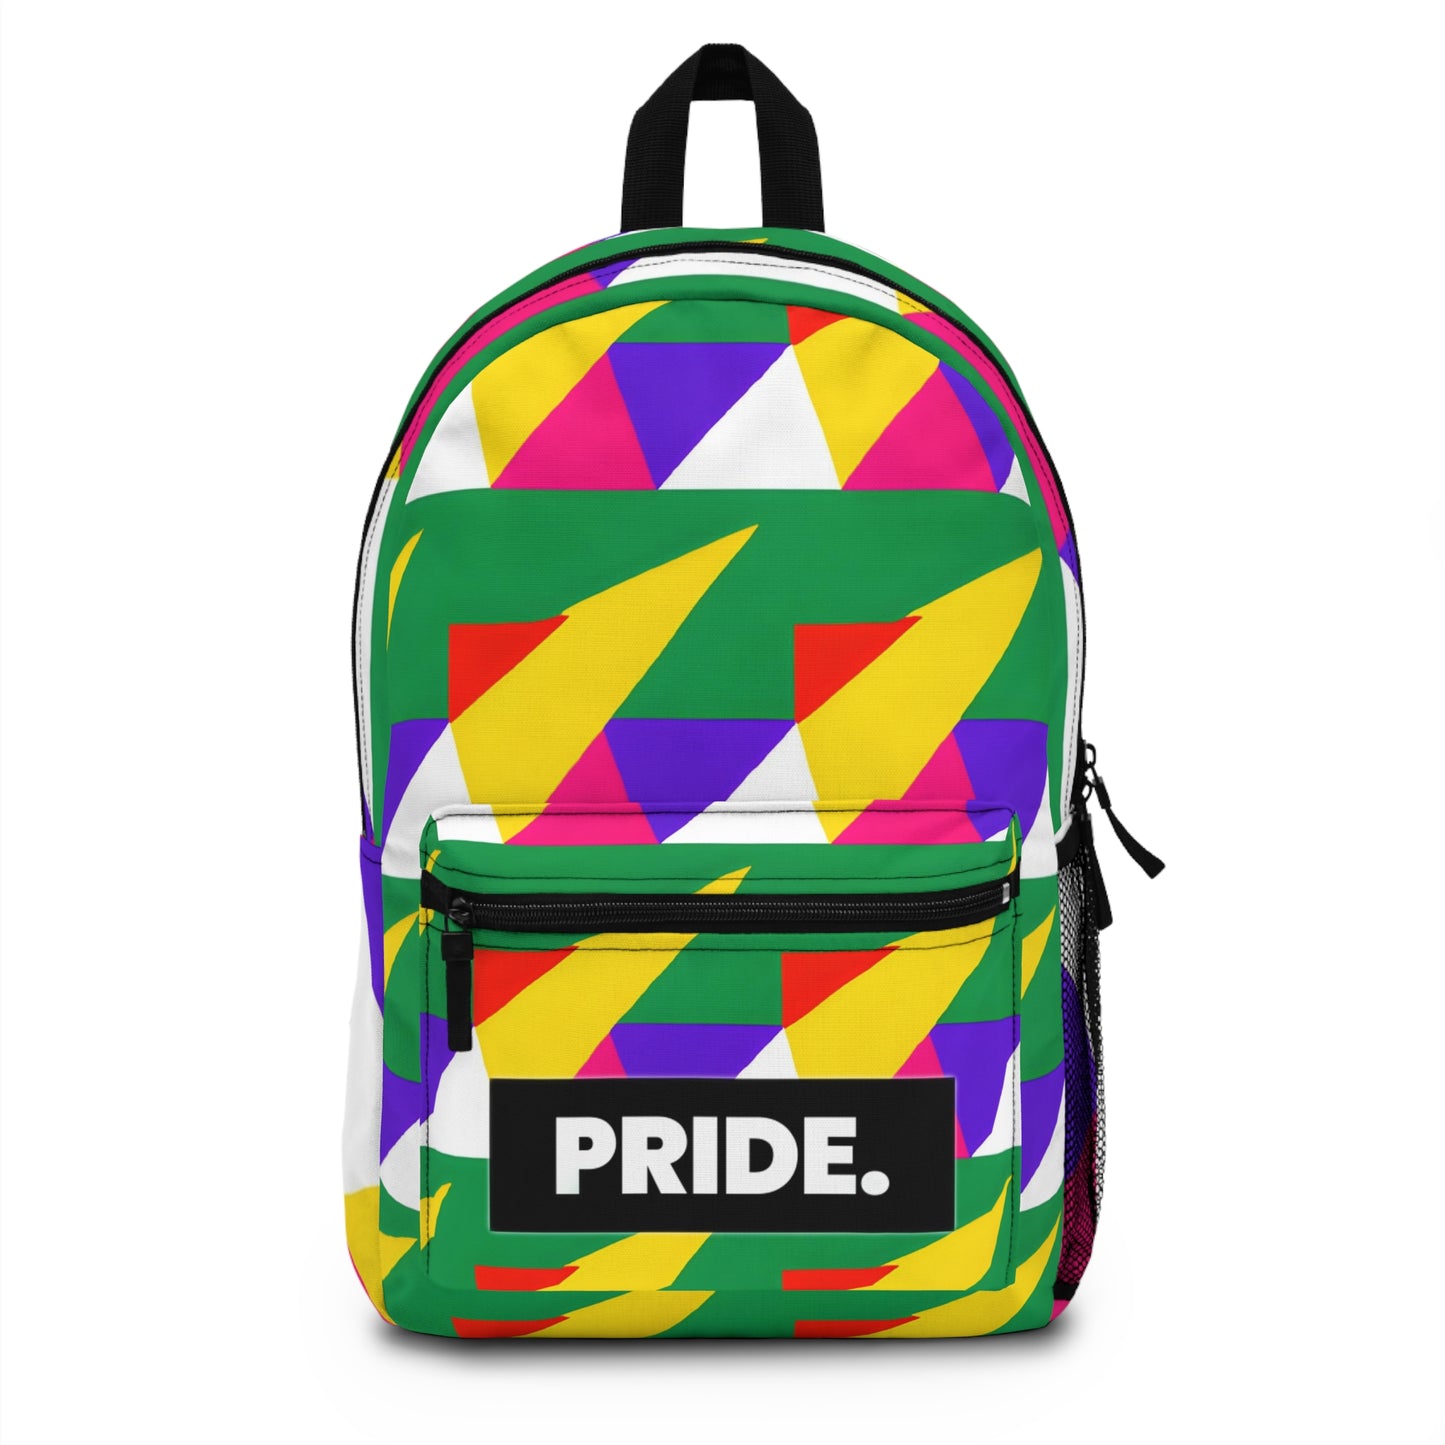 ElectricVixen - Gay Pride Backpack